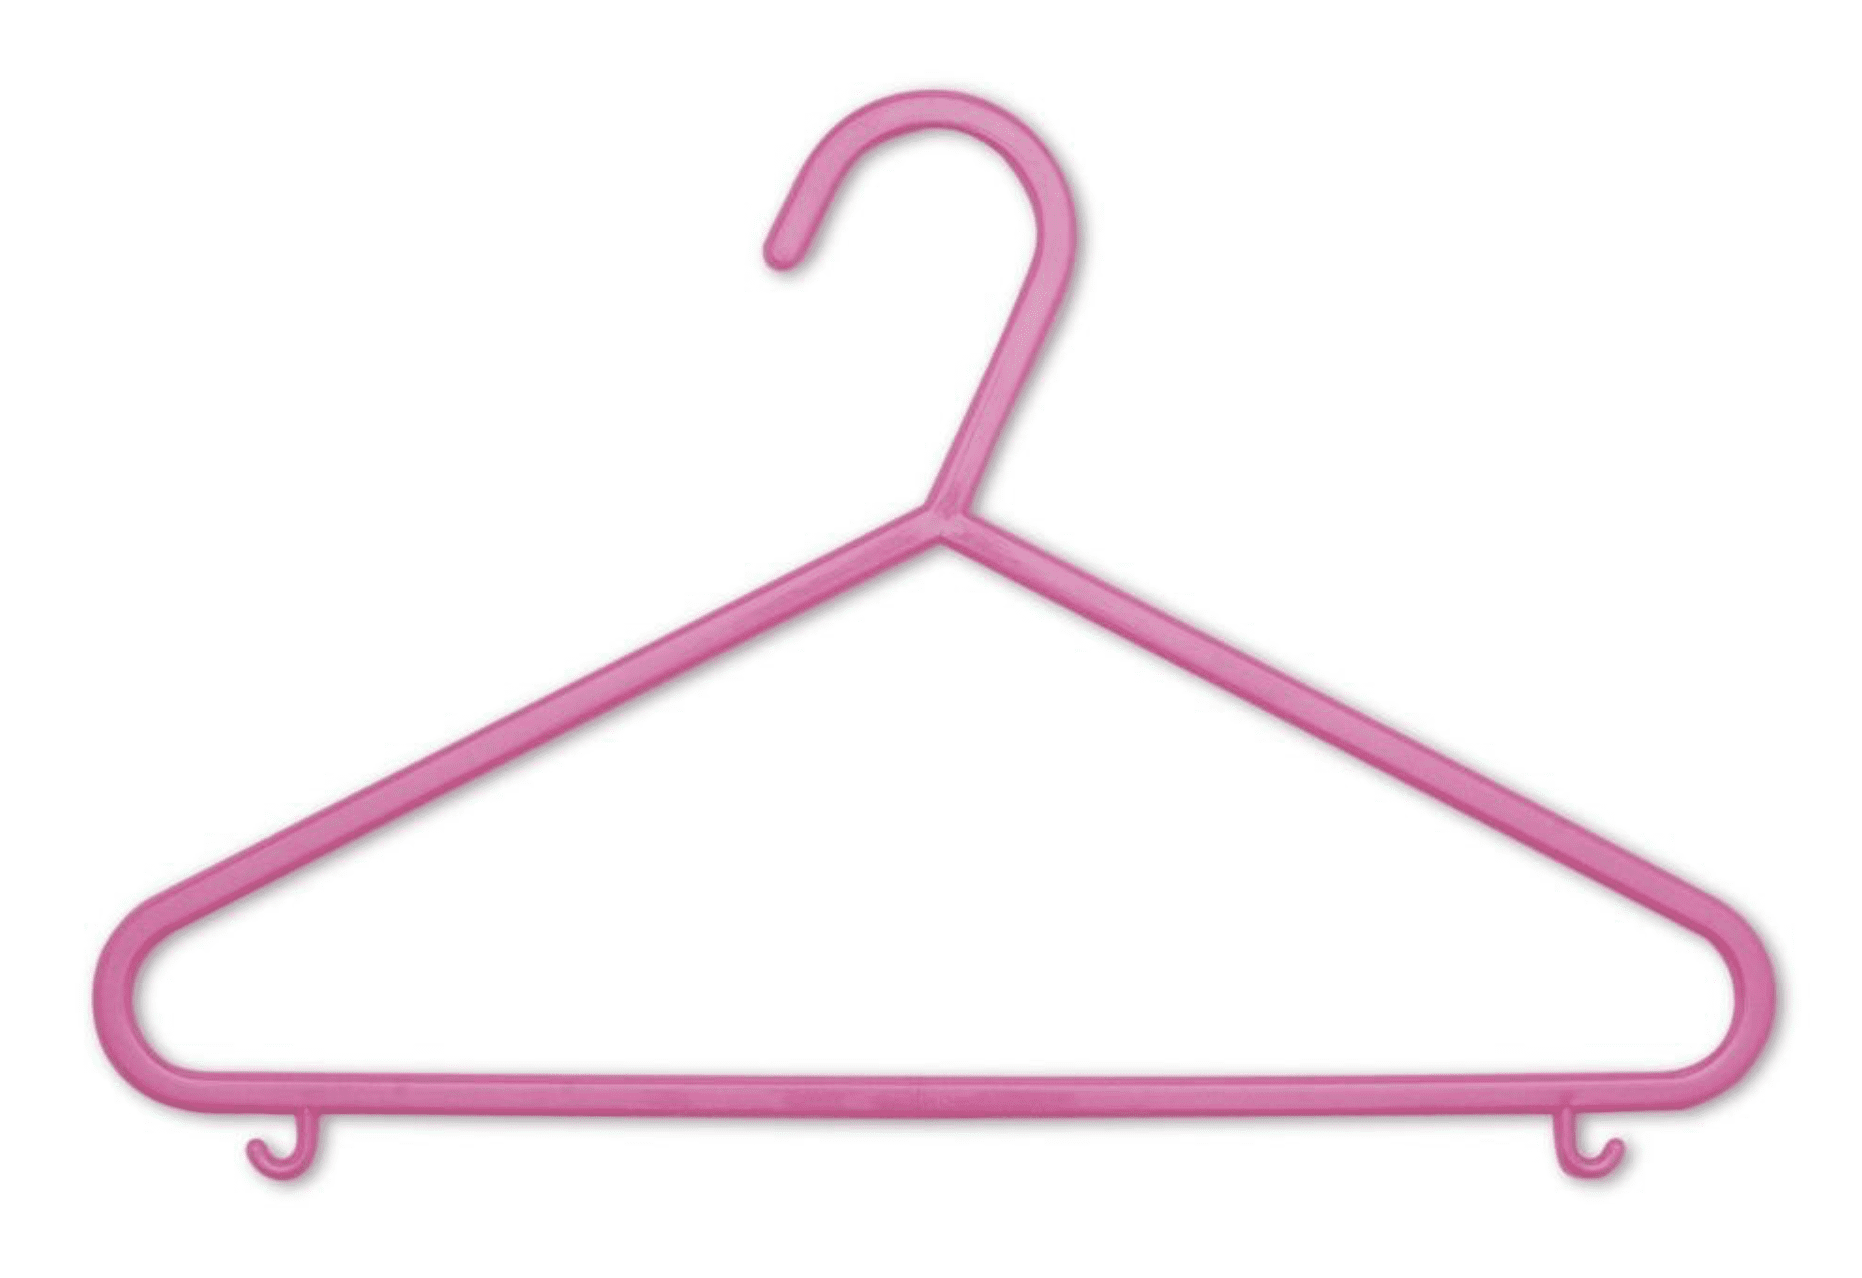 kids coat hangers toddler baby hangers colors in Pink & Blue Baby Coat Hangers 